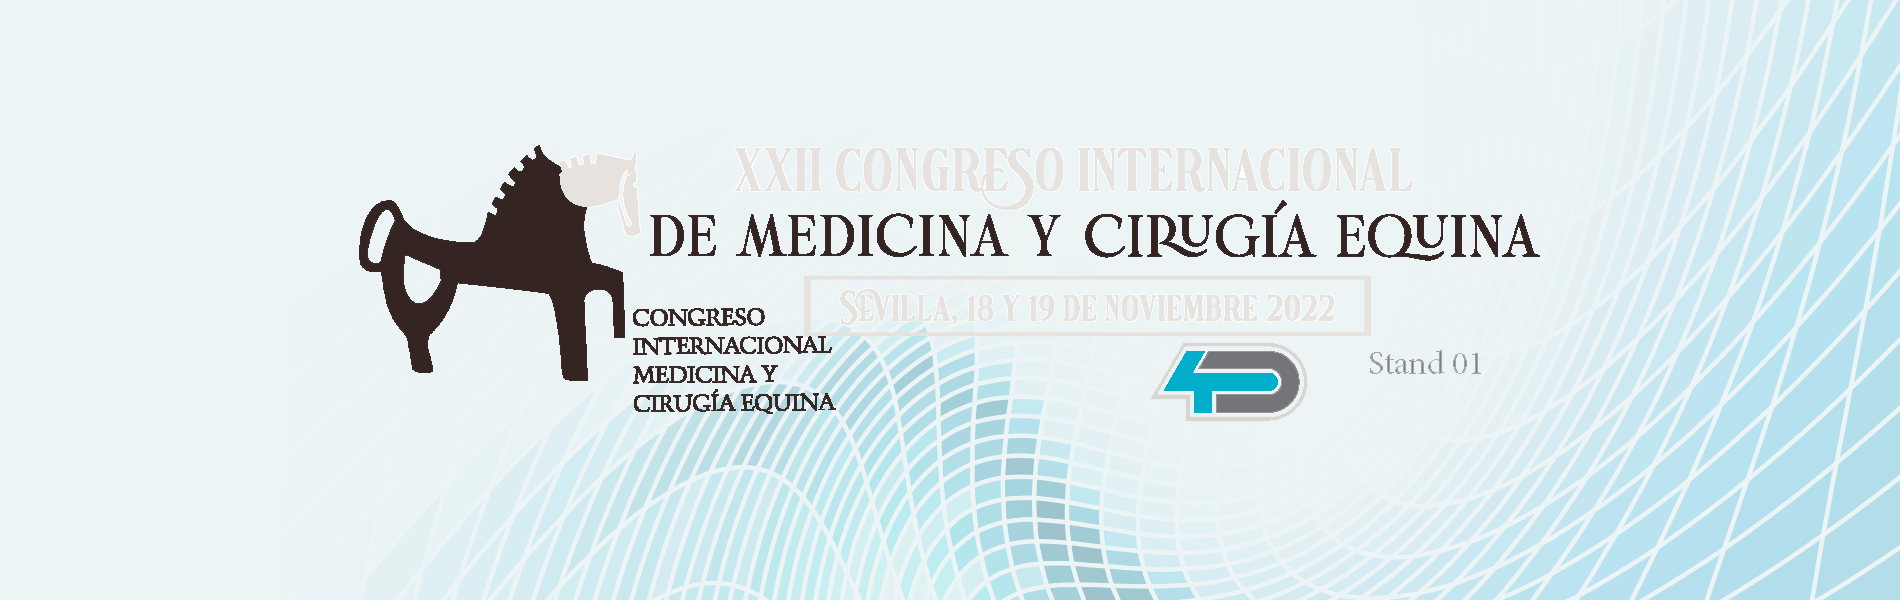 XXII CONGRESO INTERNACIONAL DE  MEDICINA Y CIRUGÍA EQUINA, Consejo Andaluz de Colegios Oficiales de Veterinarios